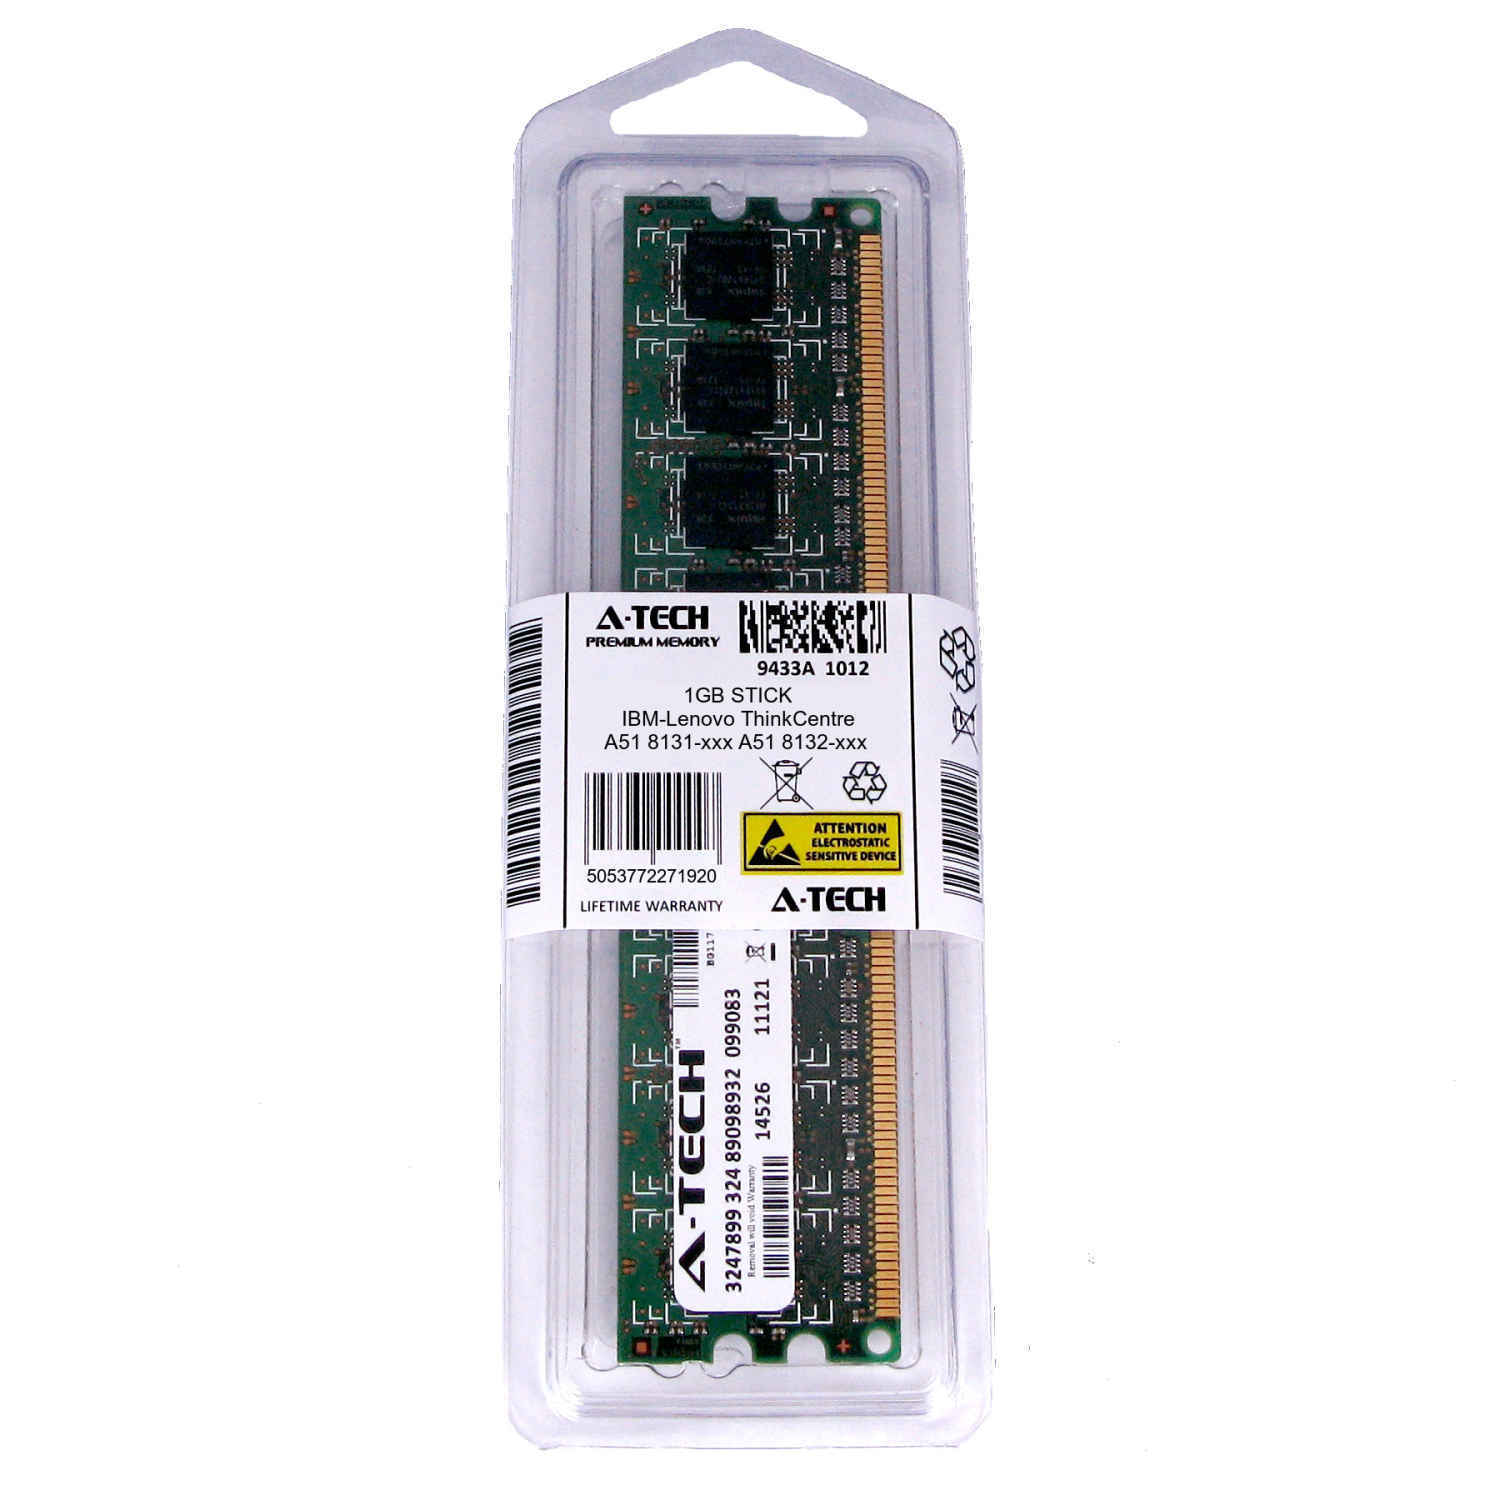 1GB DIMM IBM-Lenovo ThinkCentre A51 8131-xxx 8132-xxx 8133-xxx Ram Memory